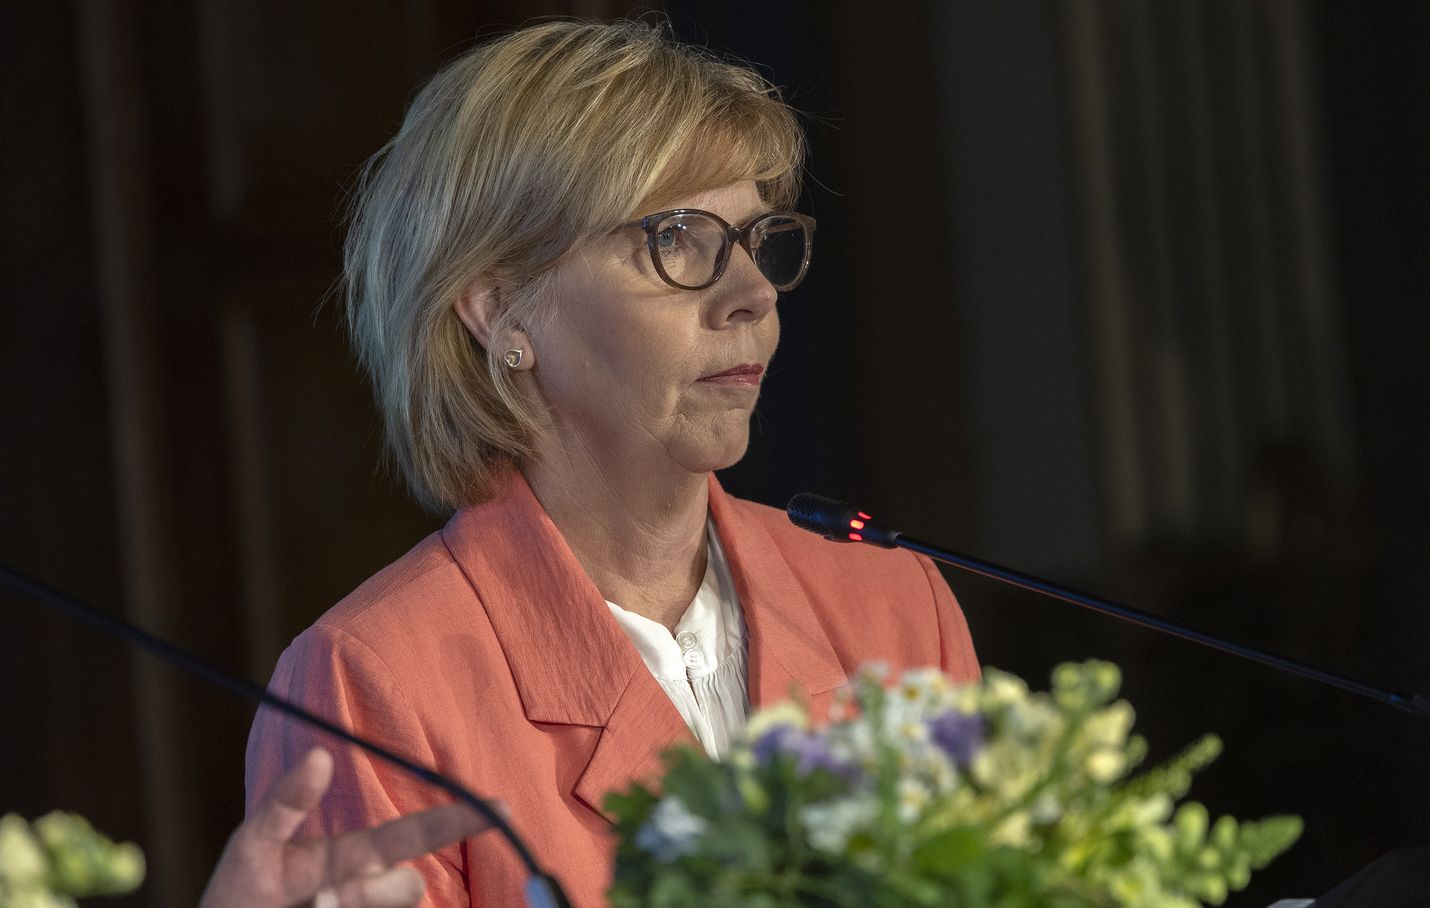 Rkp:n puheenjohtaja Anna-Maja Henriksson on Suomen pitkäaikaisin oikeusministeri. Ministeripäiviä hänellä tulee torstaina täyteen yhteensä 3000. Ministeripäivämittarilla hän on hallituksen kokenein ministeri.